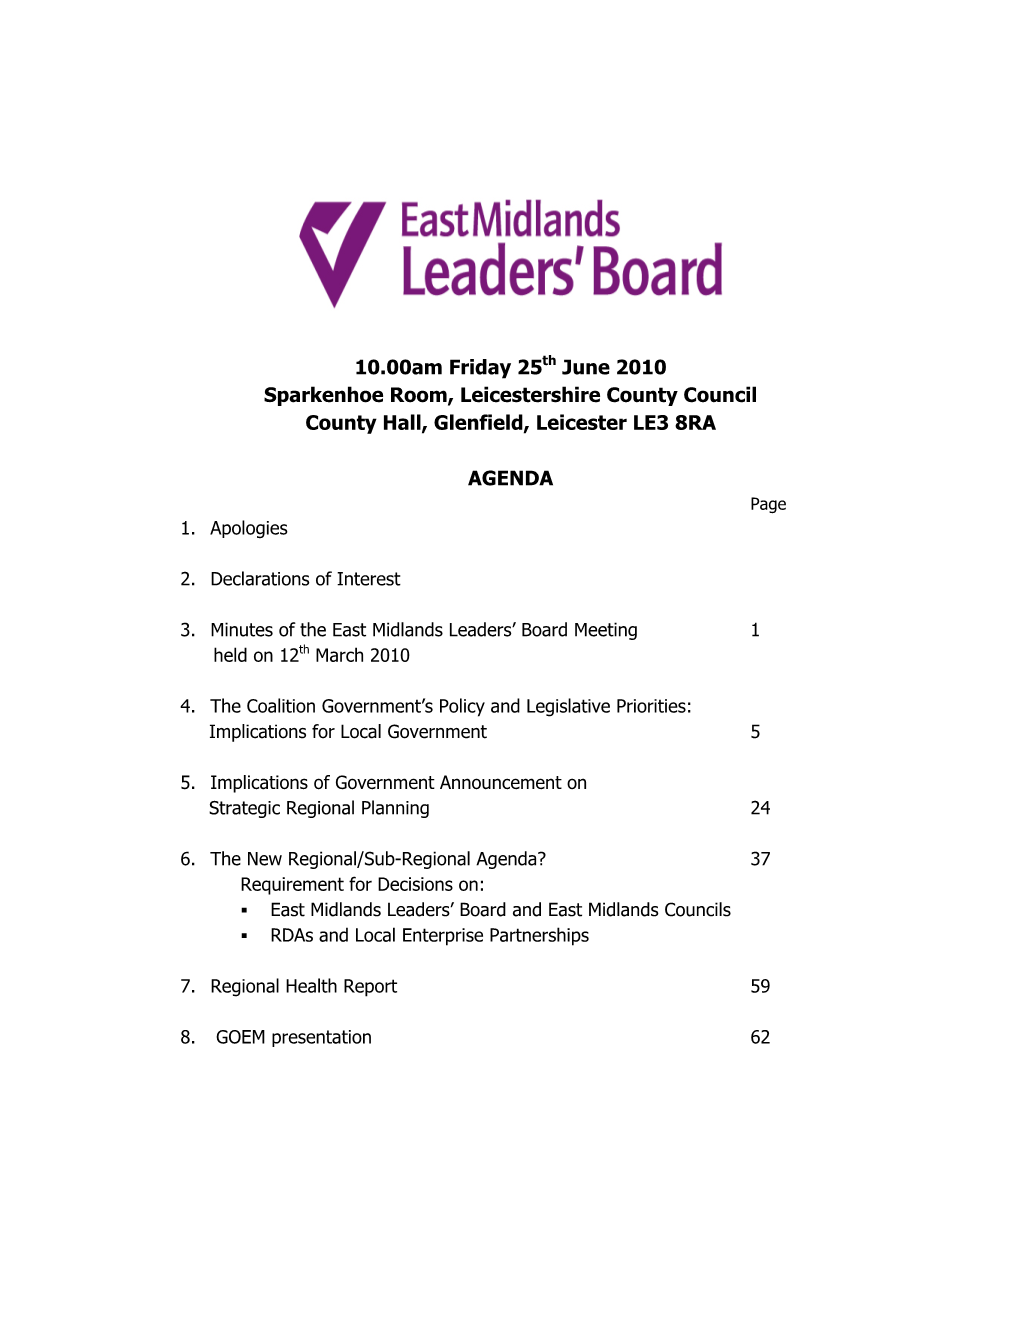 East Midlands Leaders' Board Papers